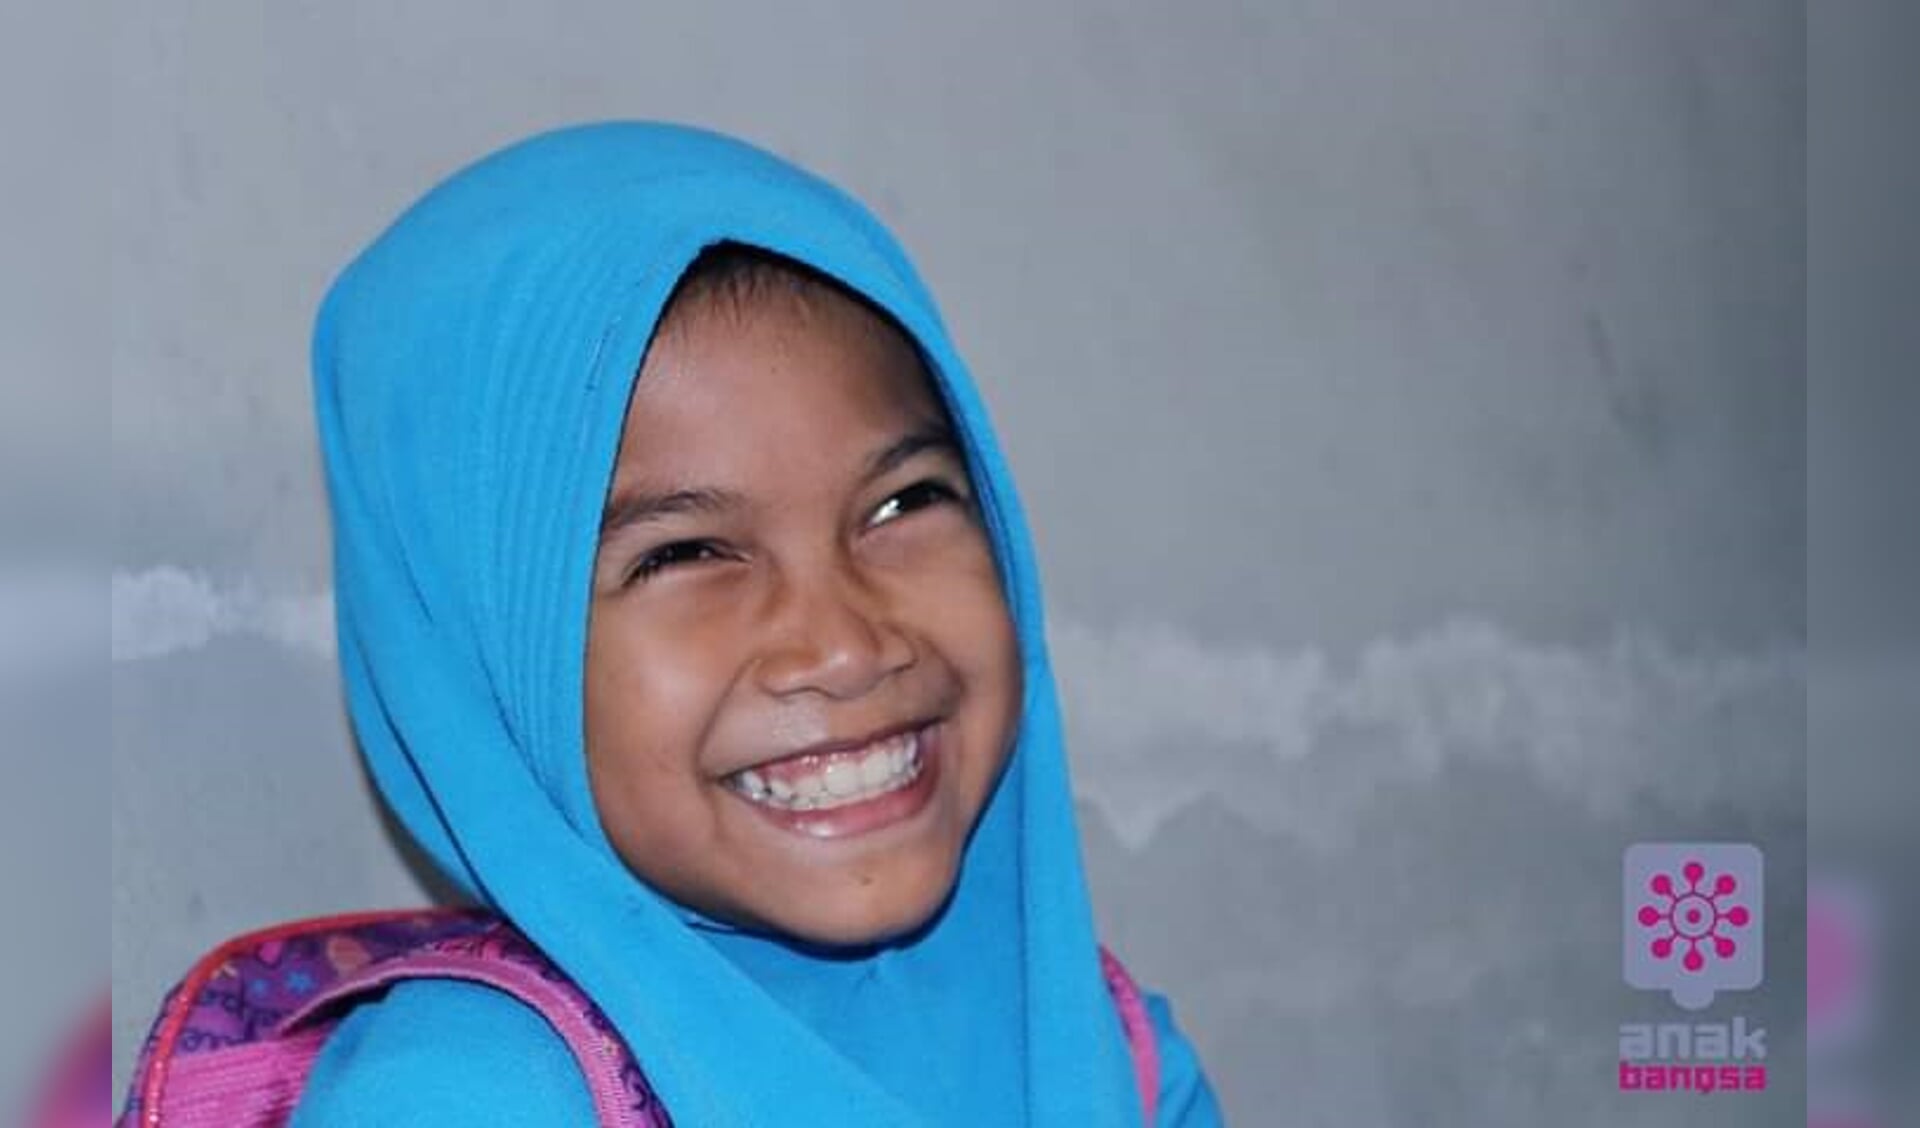 Sofia is overduidelijk blij dat ze naar school mag. Foto: PR